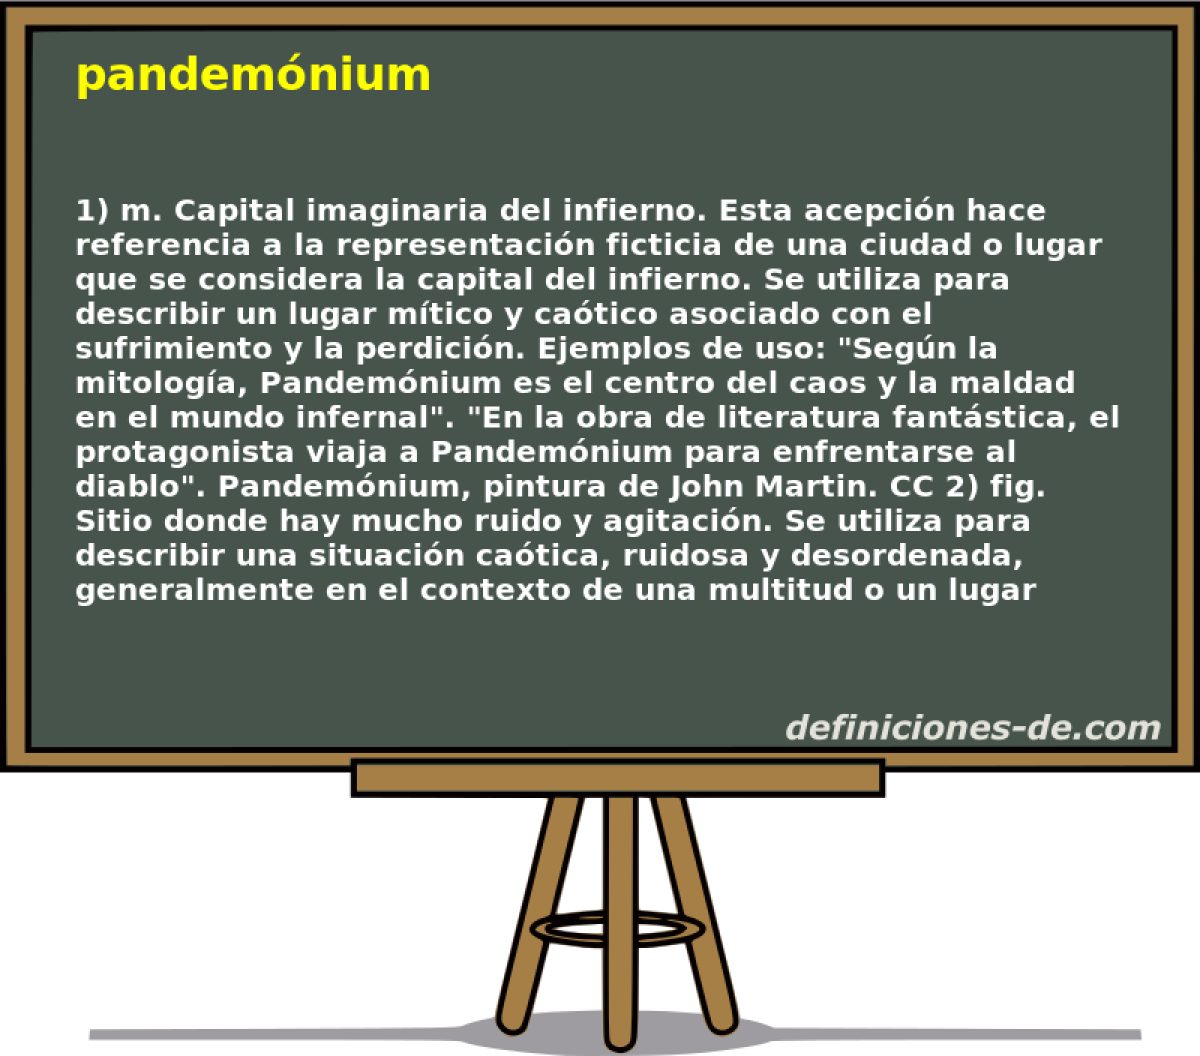 pandemnium 